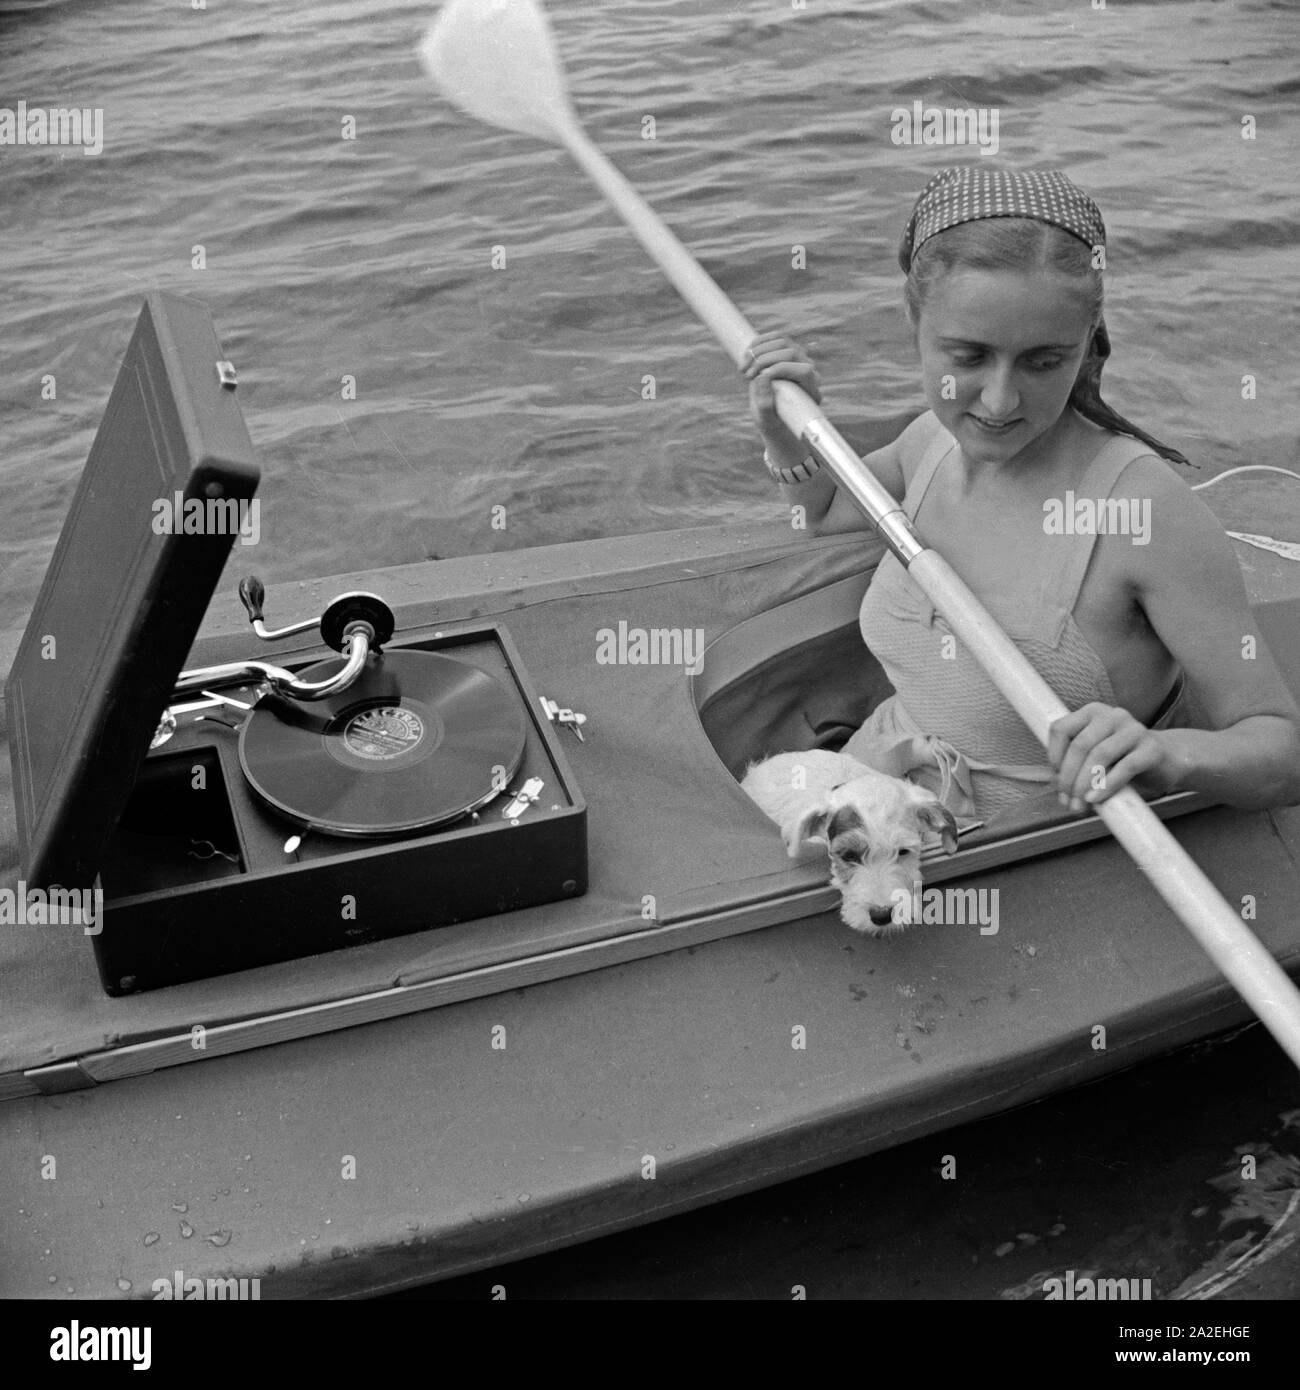 Werbefoto für das Klepper Faltboot: eine junge Frau paddelt Mit einem Welpen auf einem vedere, Deutschland 1930er Jahre. Pubblicità für un Klepper foldboat: una giovane donna con un cucciolo pagaiando su un lago, Germania 1930s. Foto Stock